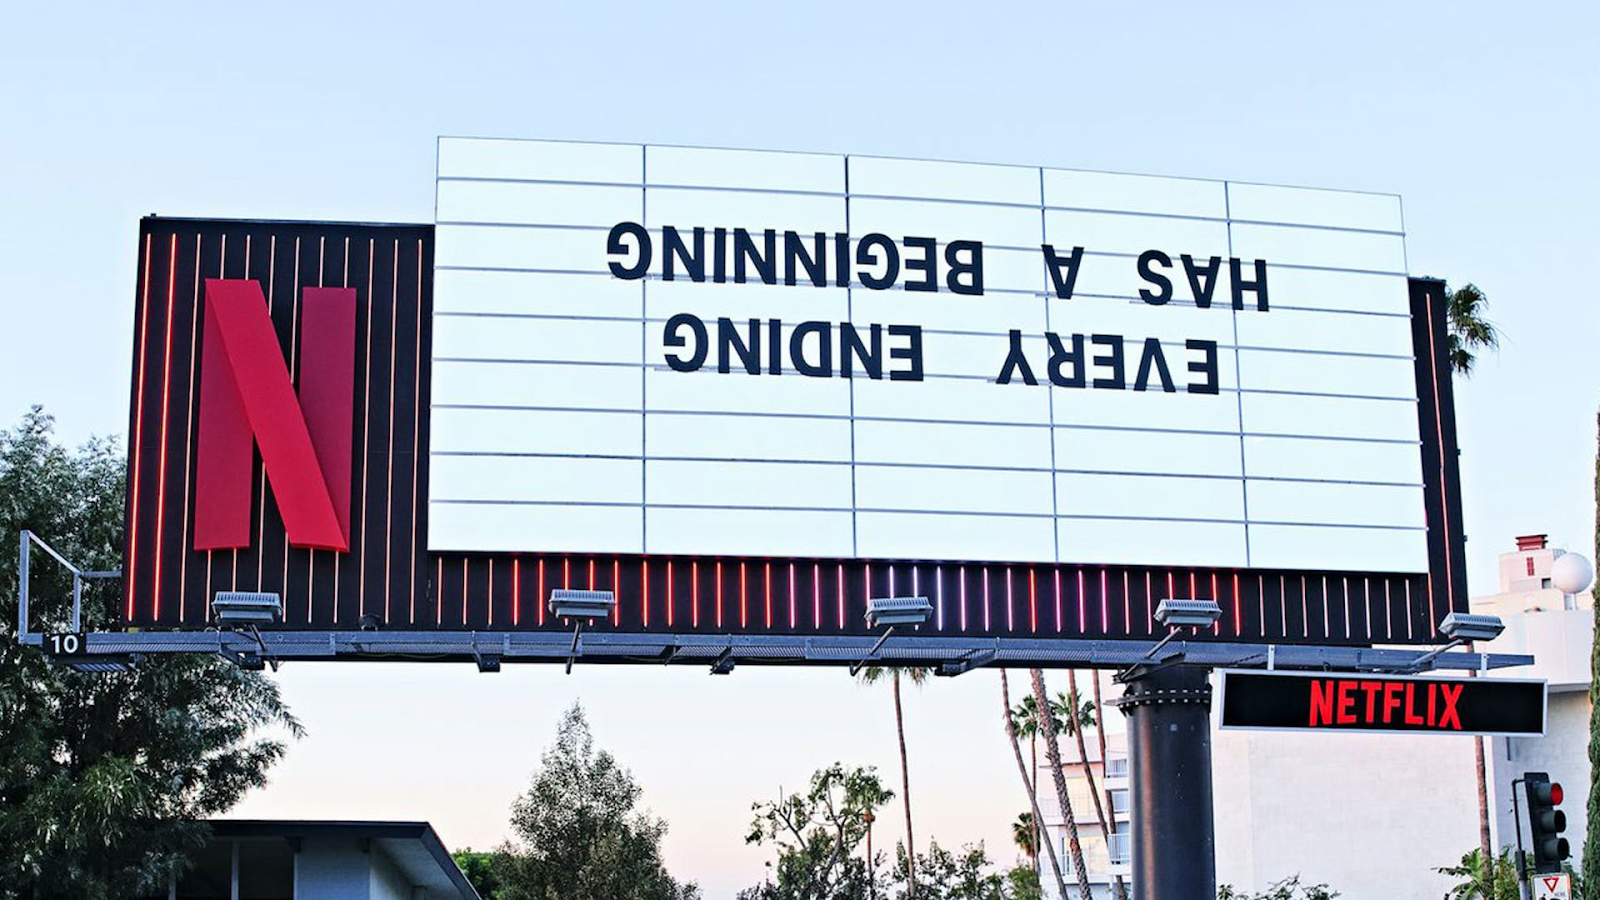 Netflix billboard